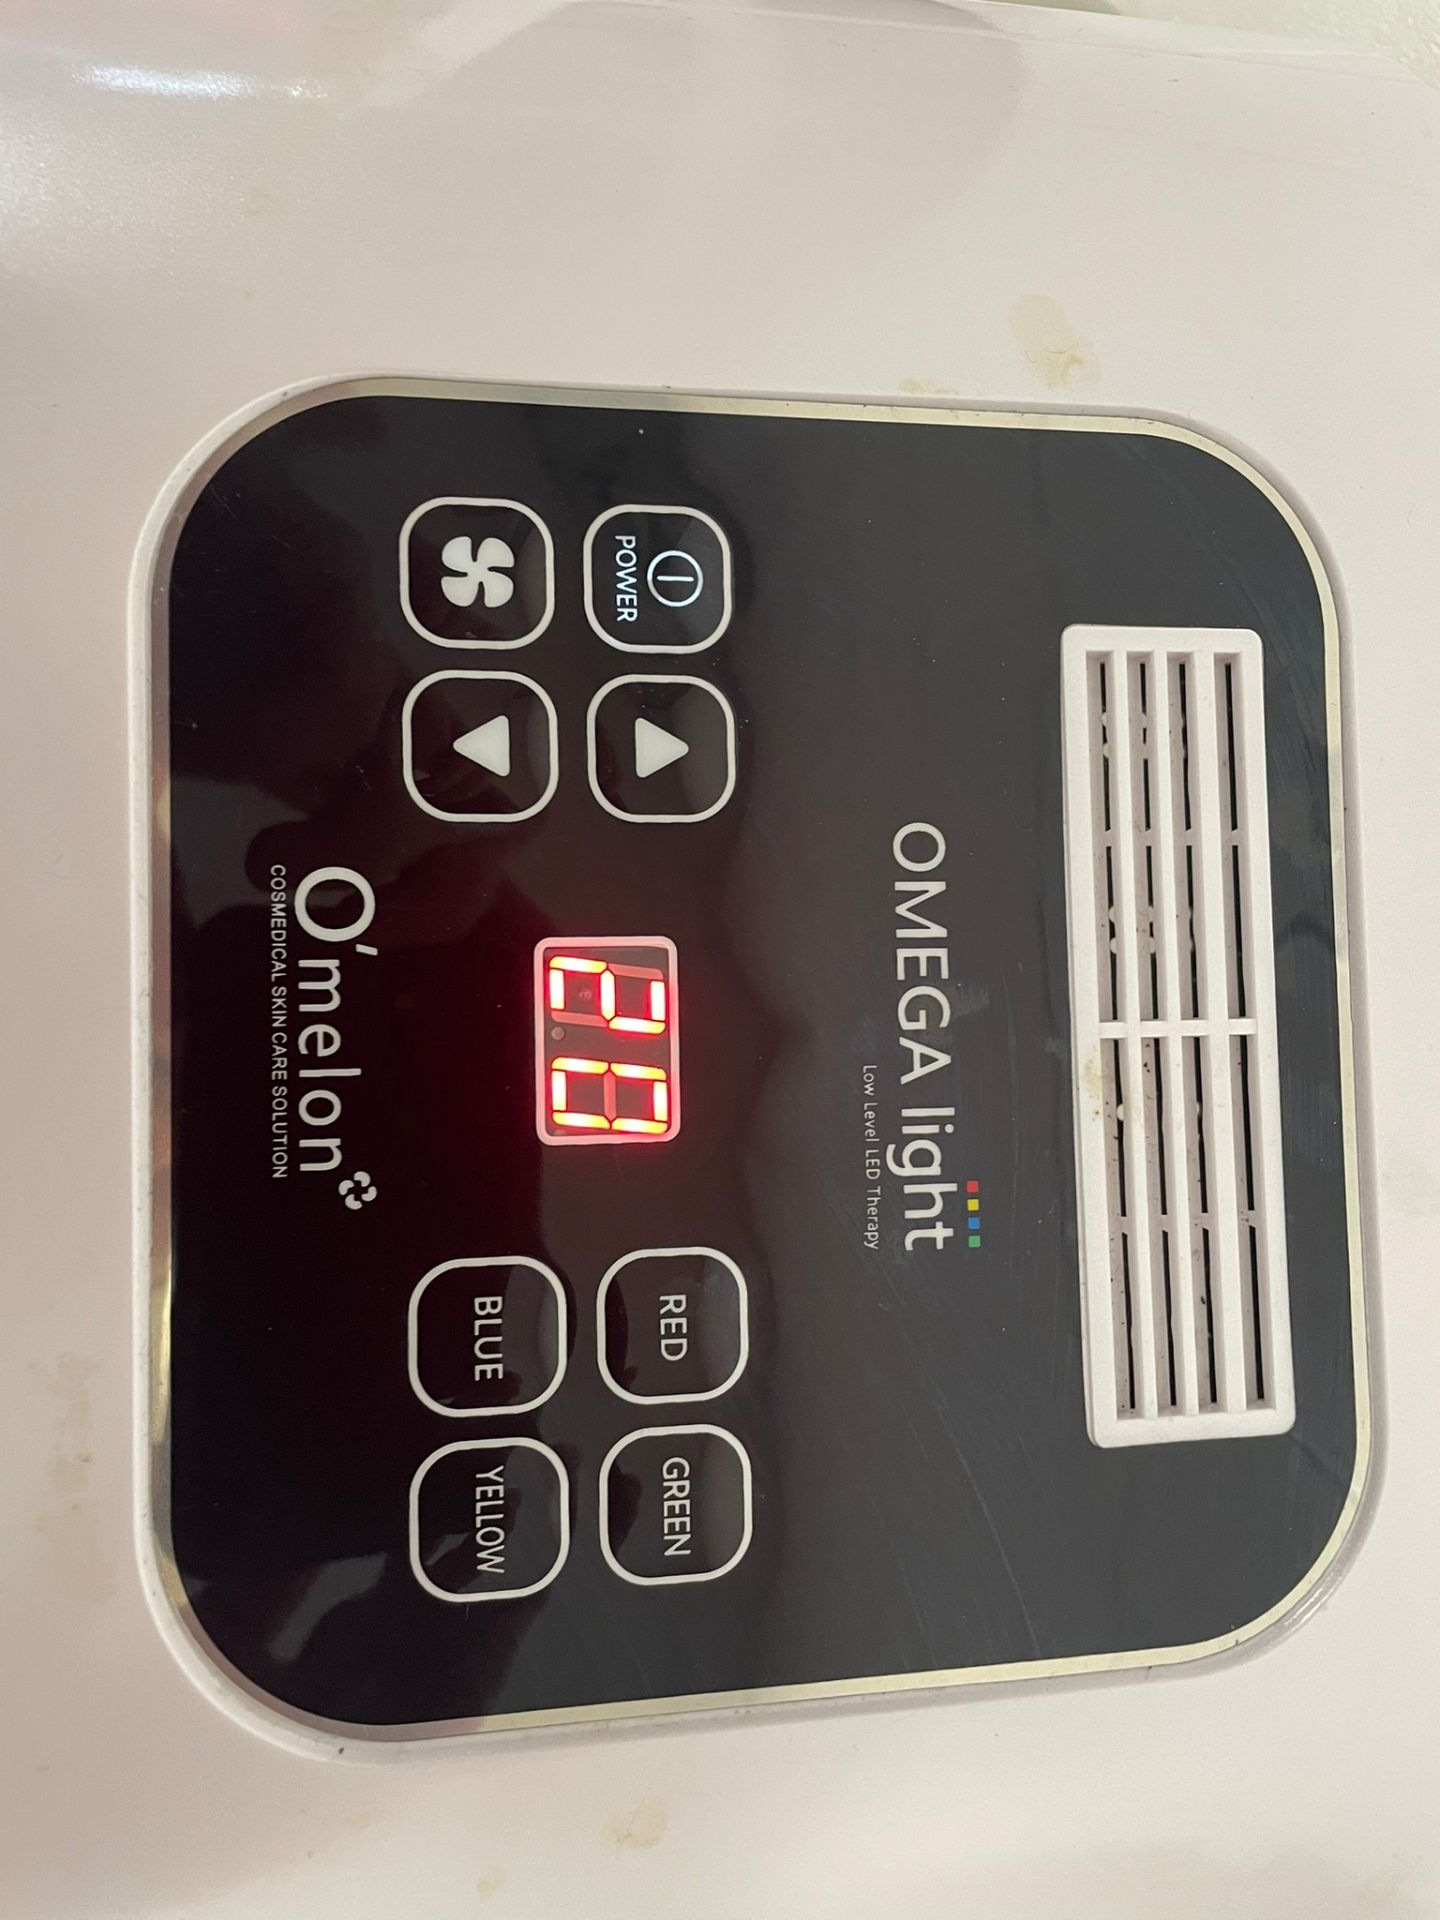 O'melon OMEGA Light LED Therapy Skin Care Device 4 Colors 1EA 100~240V - Image 4 of 4